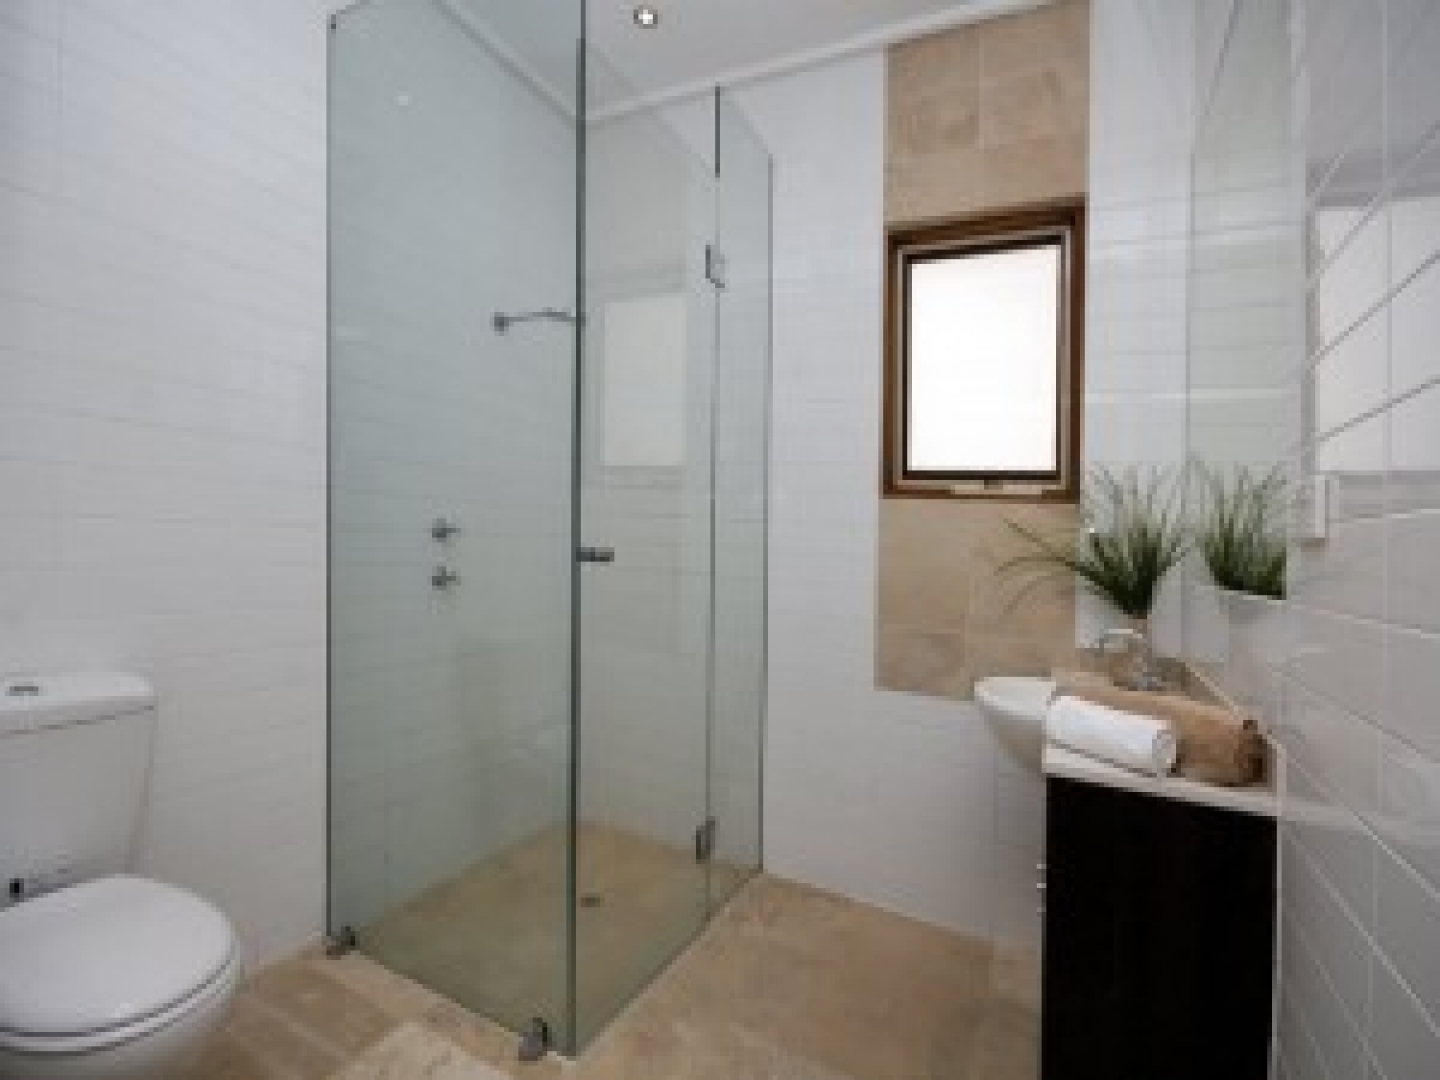 Ванные комнаты с душевыми панелями